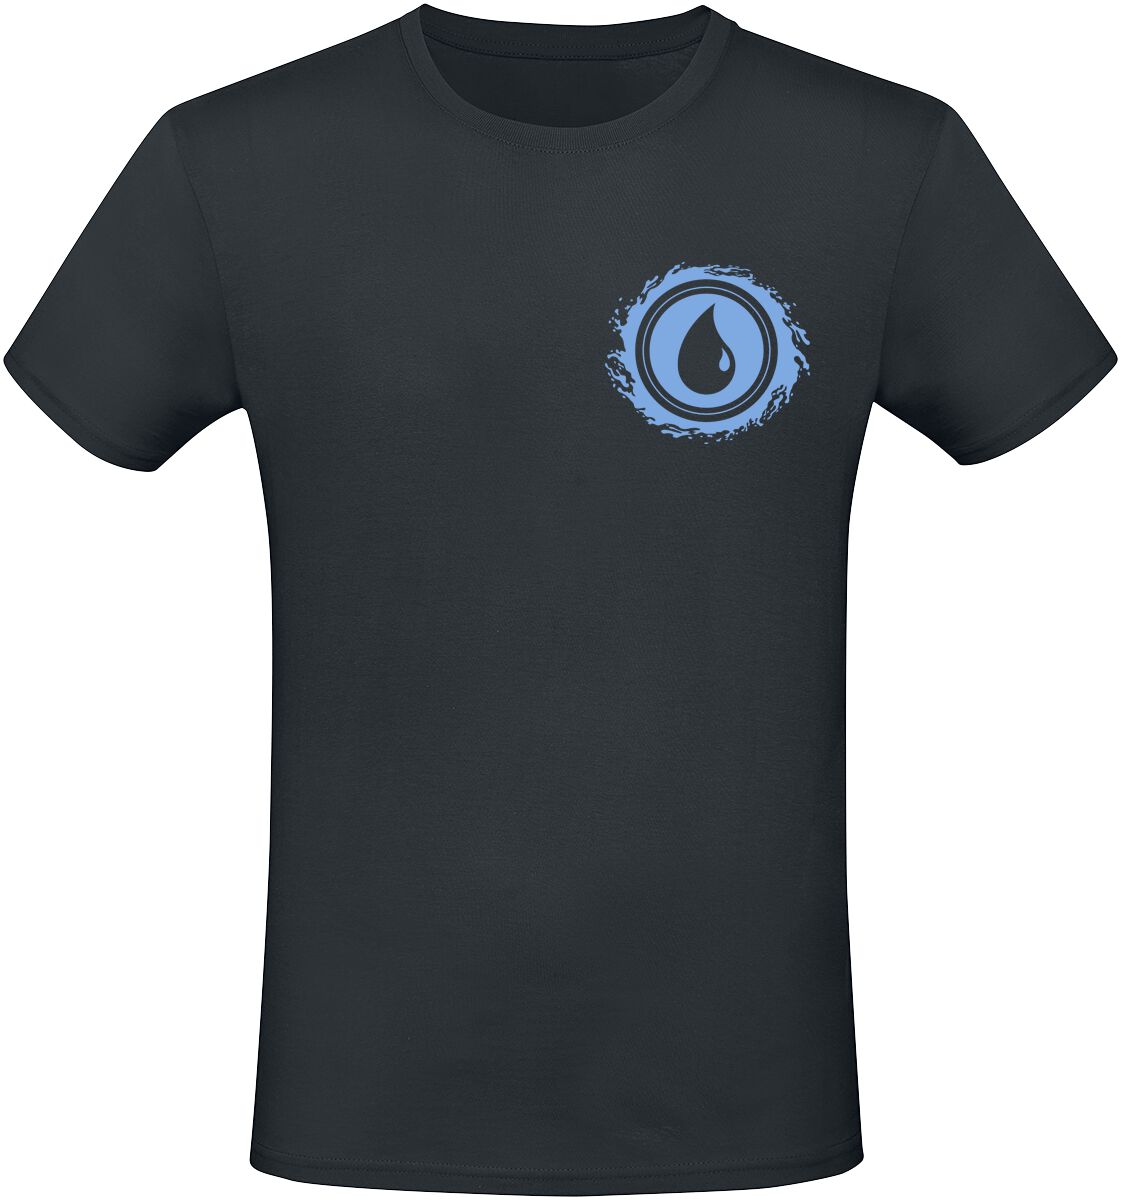 Magic: The Gathering - Gaming T-Shirt - Blue Mana - S bis XXL - für Männer - Größe S - schwarz  - EMP exklusives Merchandise!